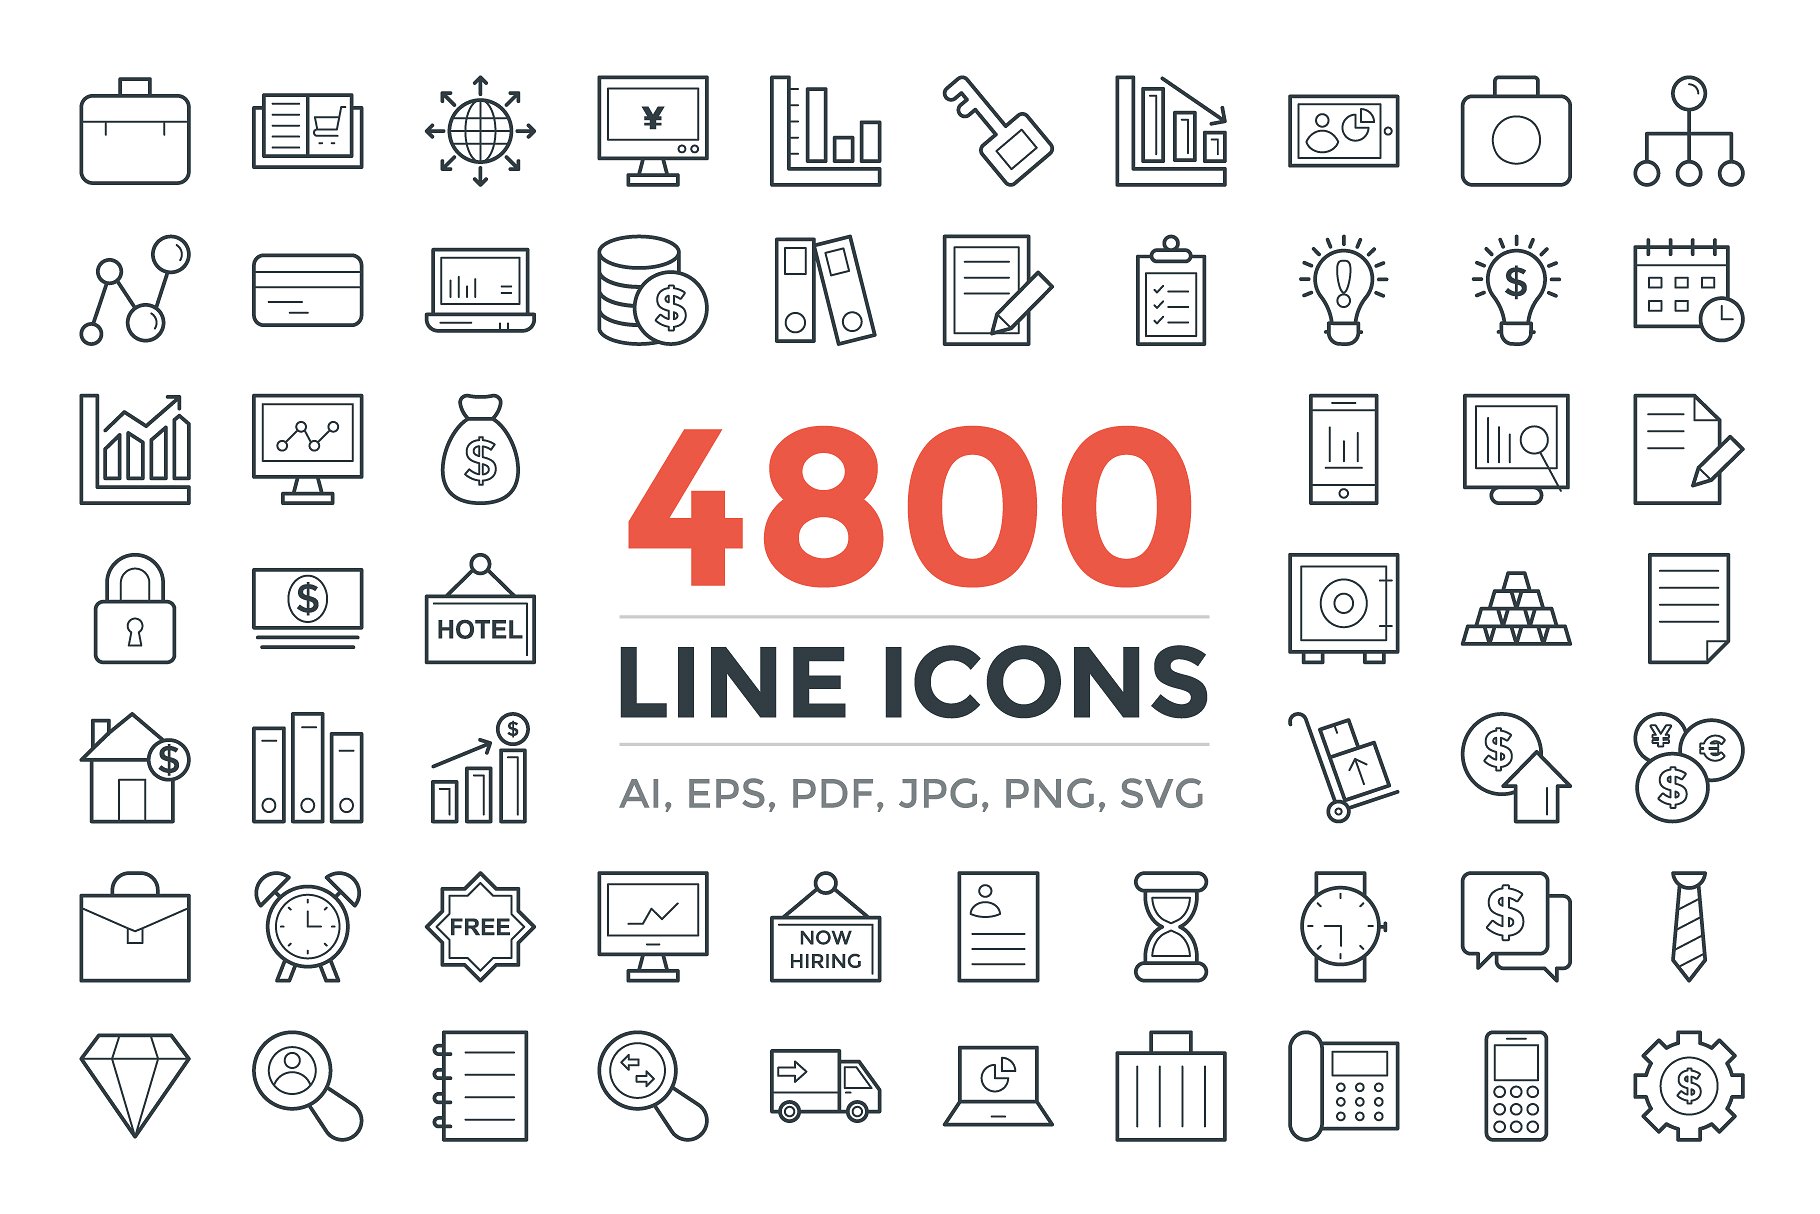 4800枚量贩式线条图标合集 4800 Line Icons Pack插图